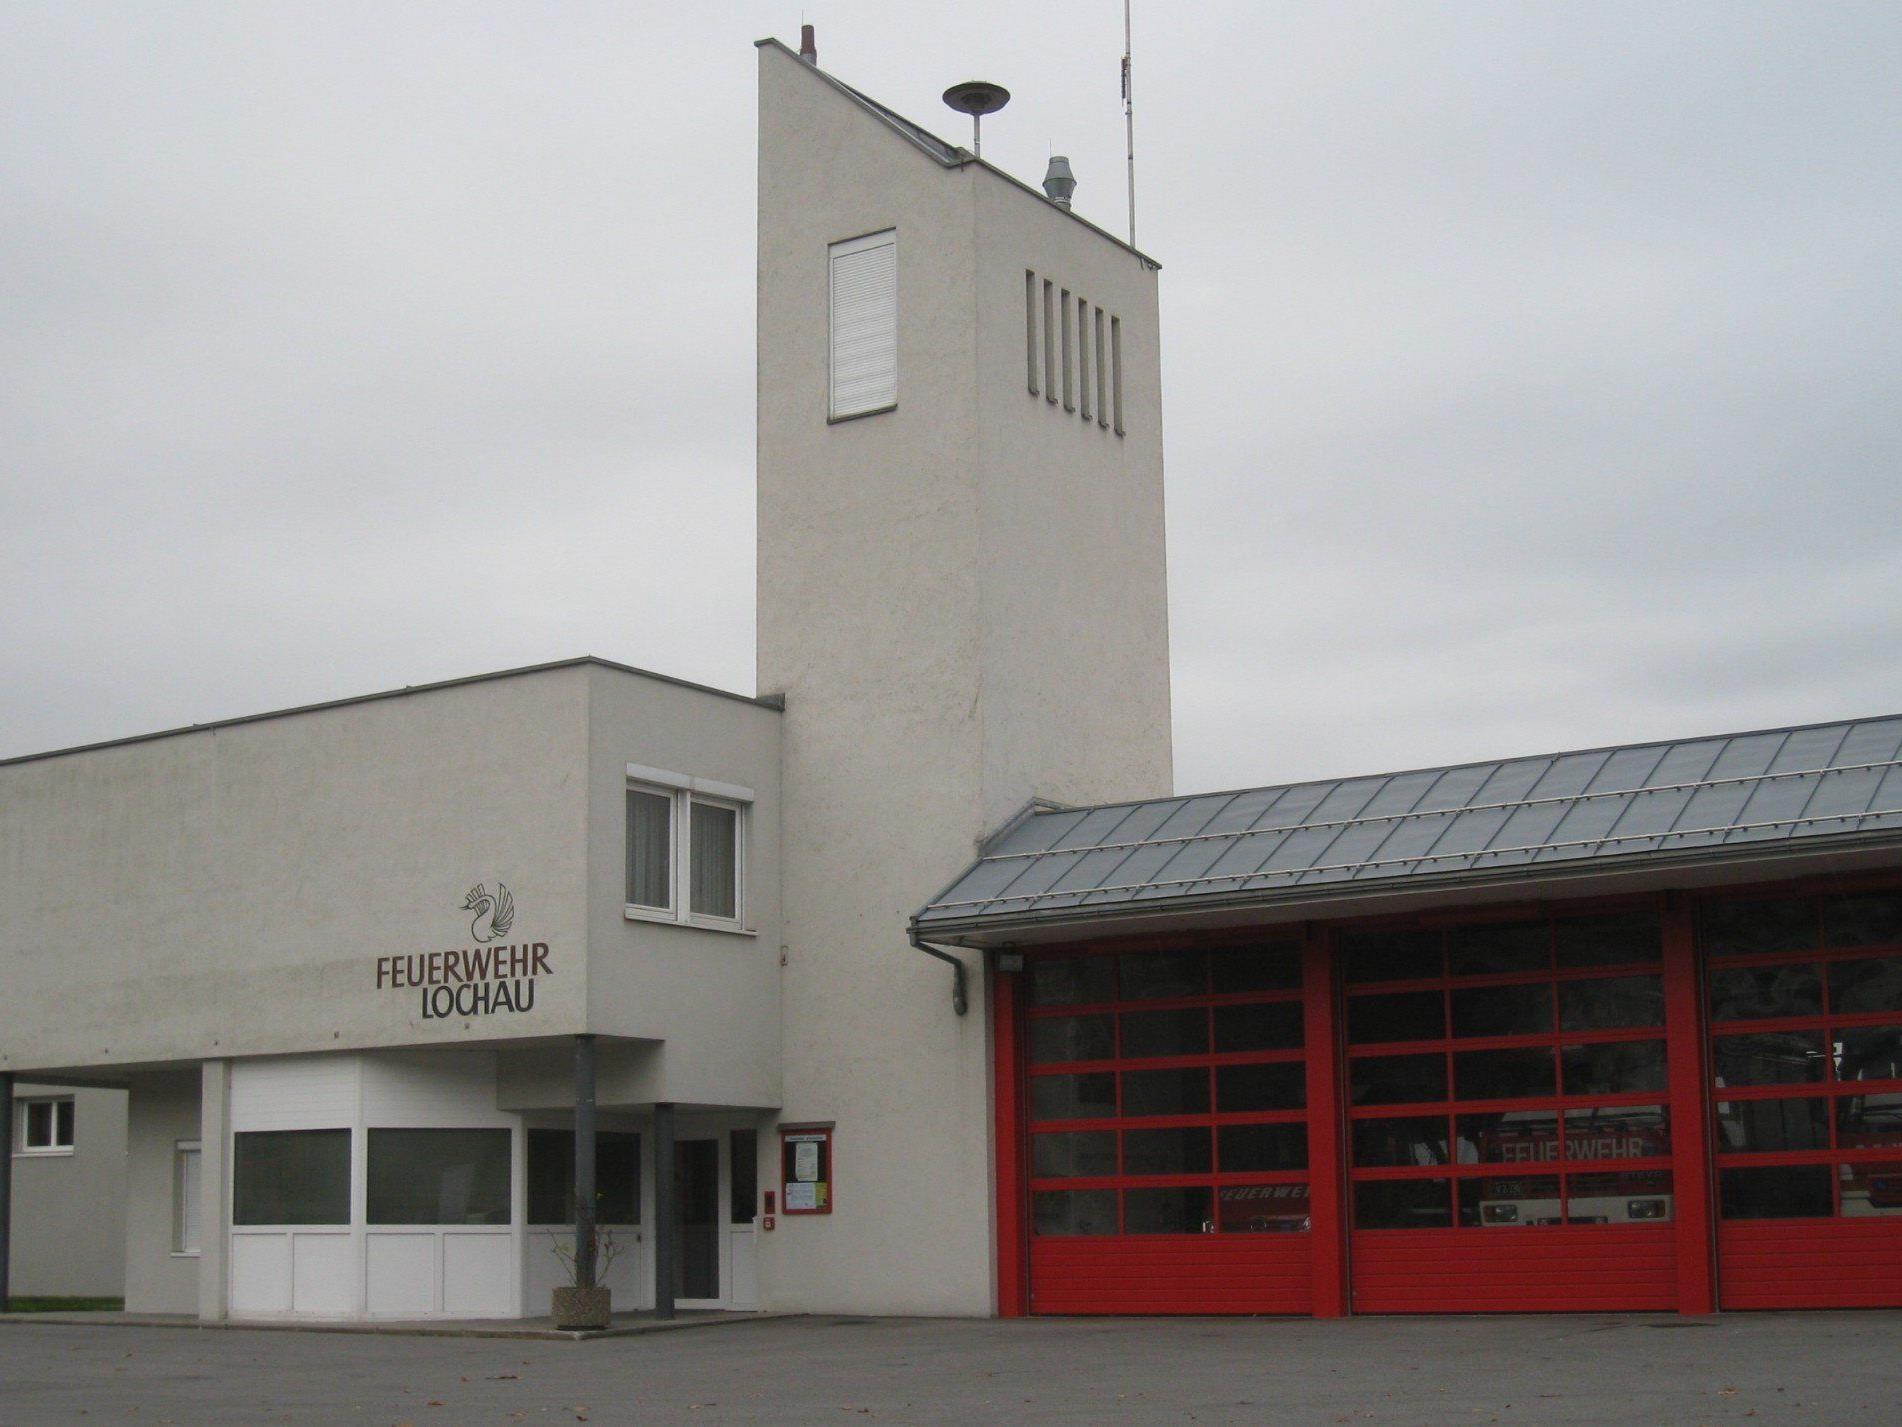 Einladung zu einem „Bundesheer“-Informationsabend ins Lochauer Feuerwehrgerätehaus.